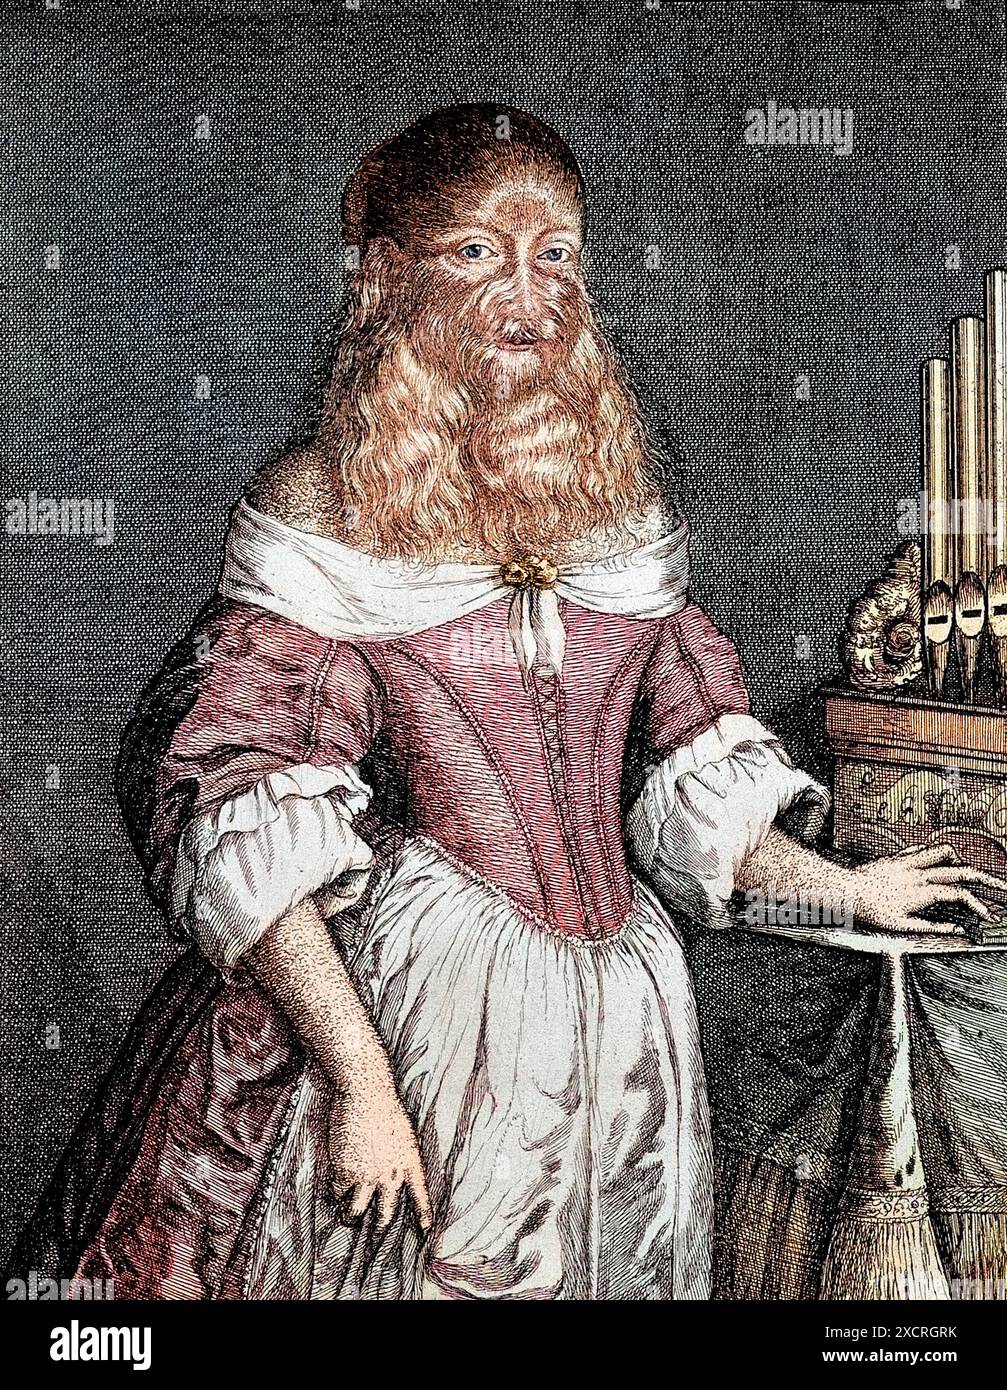 Barbara van Beck (18 février 1629 - ?) C'était une femme allemande qui souffrait d'une maladie génétique rare, hypertrichose universalis, également connue sous le nom d'Ambra Banque D'Images